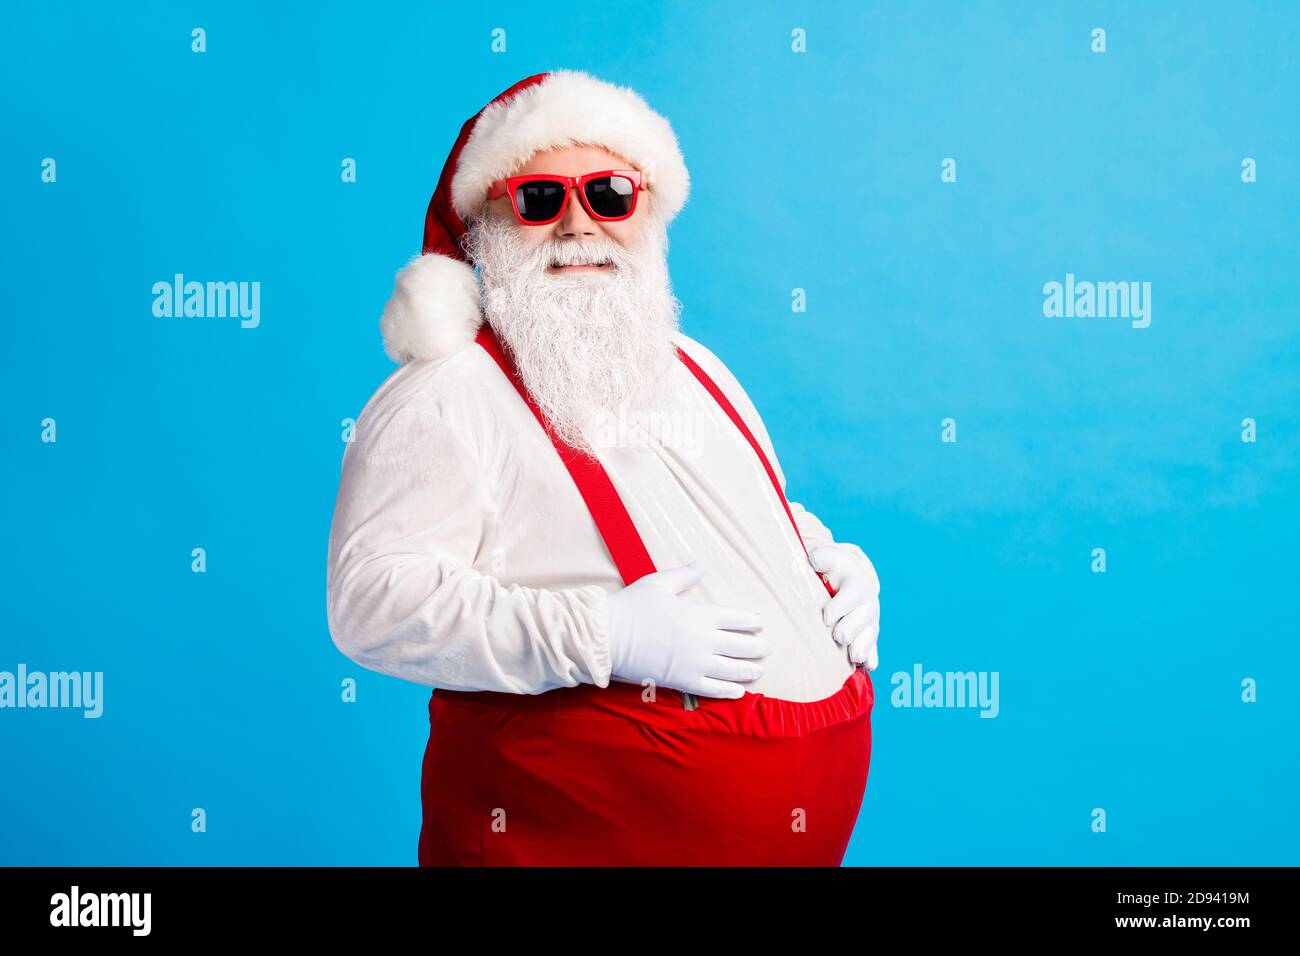 Foto von verrückten übergewichtigen weihnachtsmann berühren seinen großen  Bauch Genießen Sie Weihnachten weihnachten Neujahr Tradition Fest tragen  Kappe Hosenträger Overalls Isoliert über Stockfotografie - Alamy